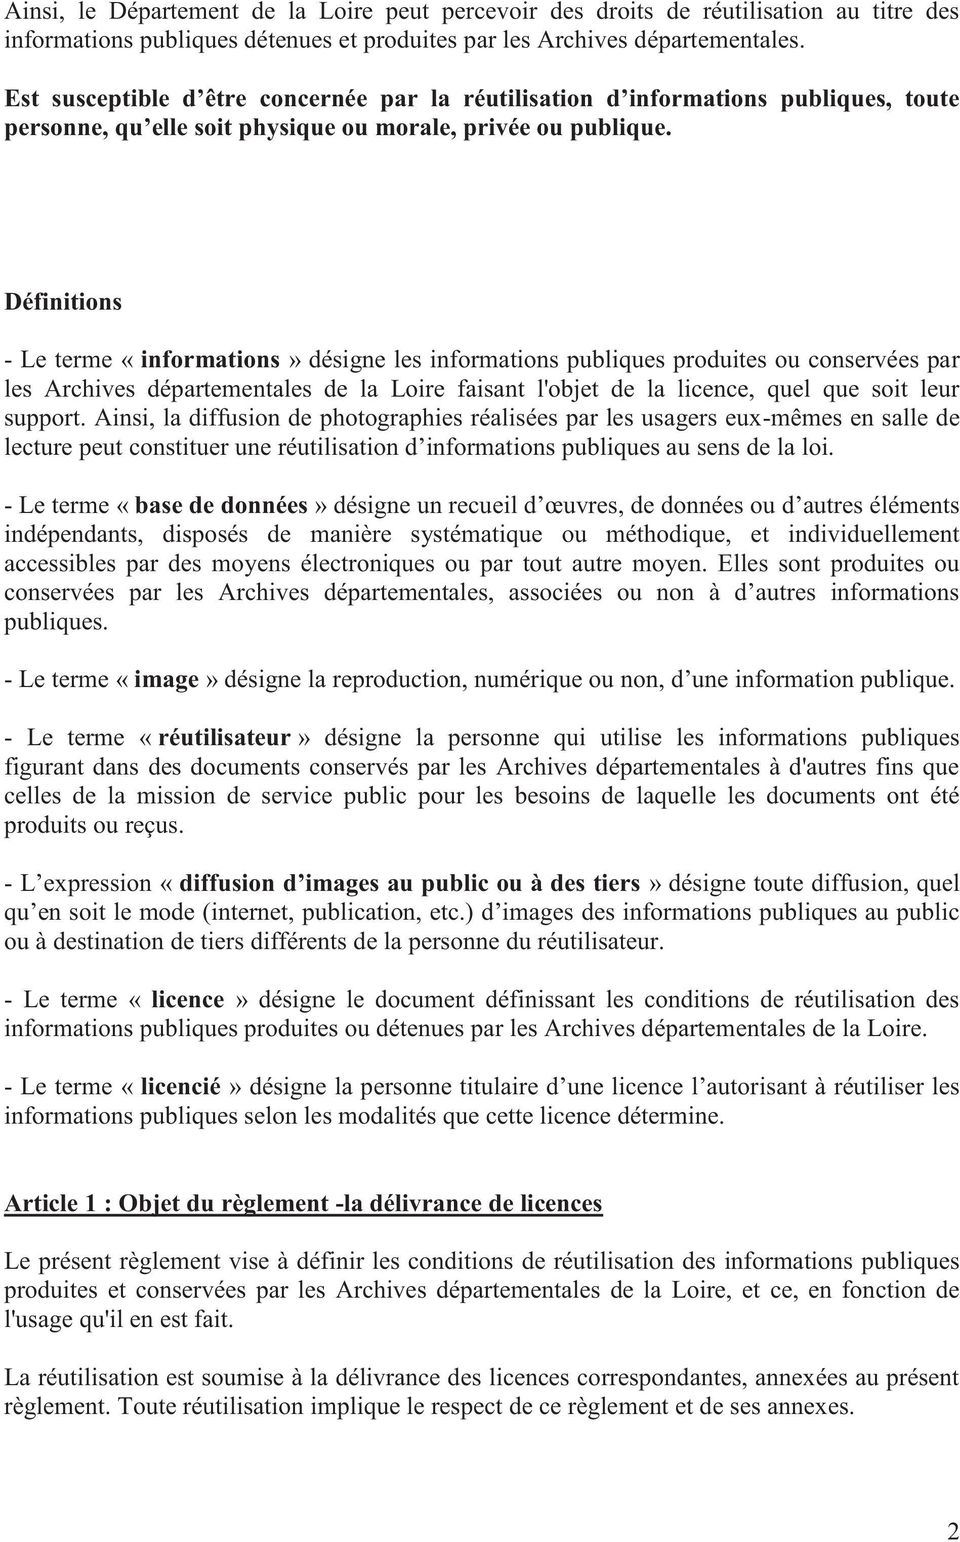 Définitions - Le terme «informations» désigne les informations publiques produites ou conservées par les Archives départementales de la Loire faisant l'objet de la licence, quel que soit leur support.